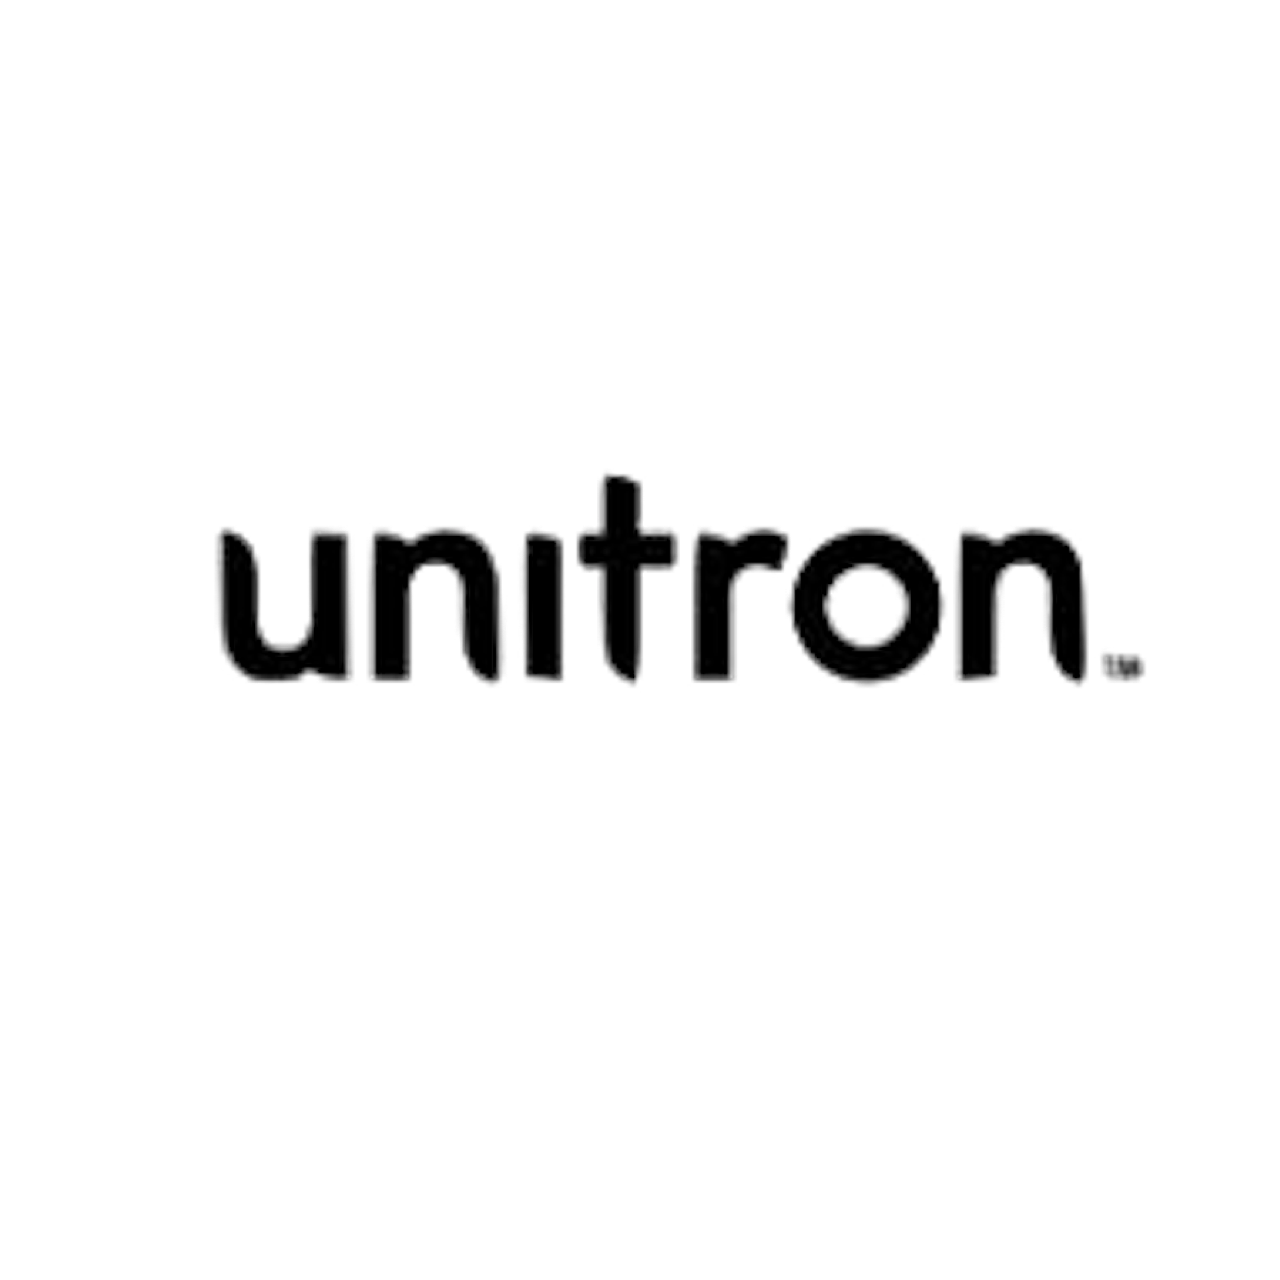 Unitron Markenzubehör für Ihre Hörgeräte - Jetzt entdecken!